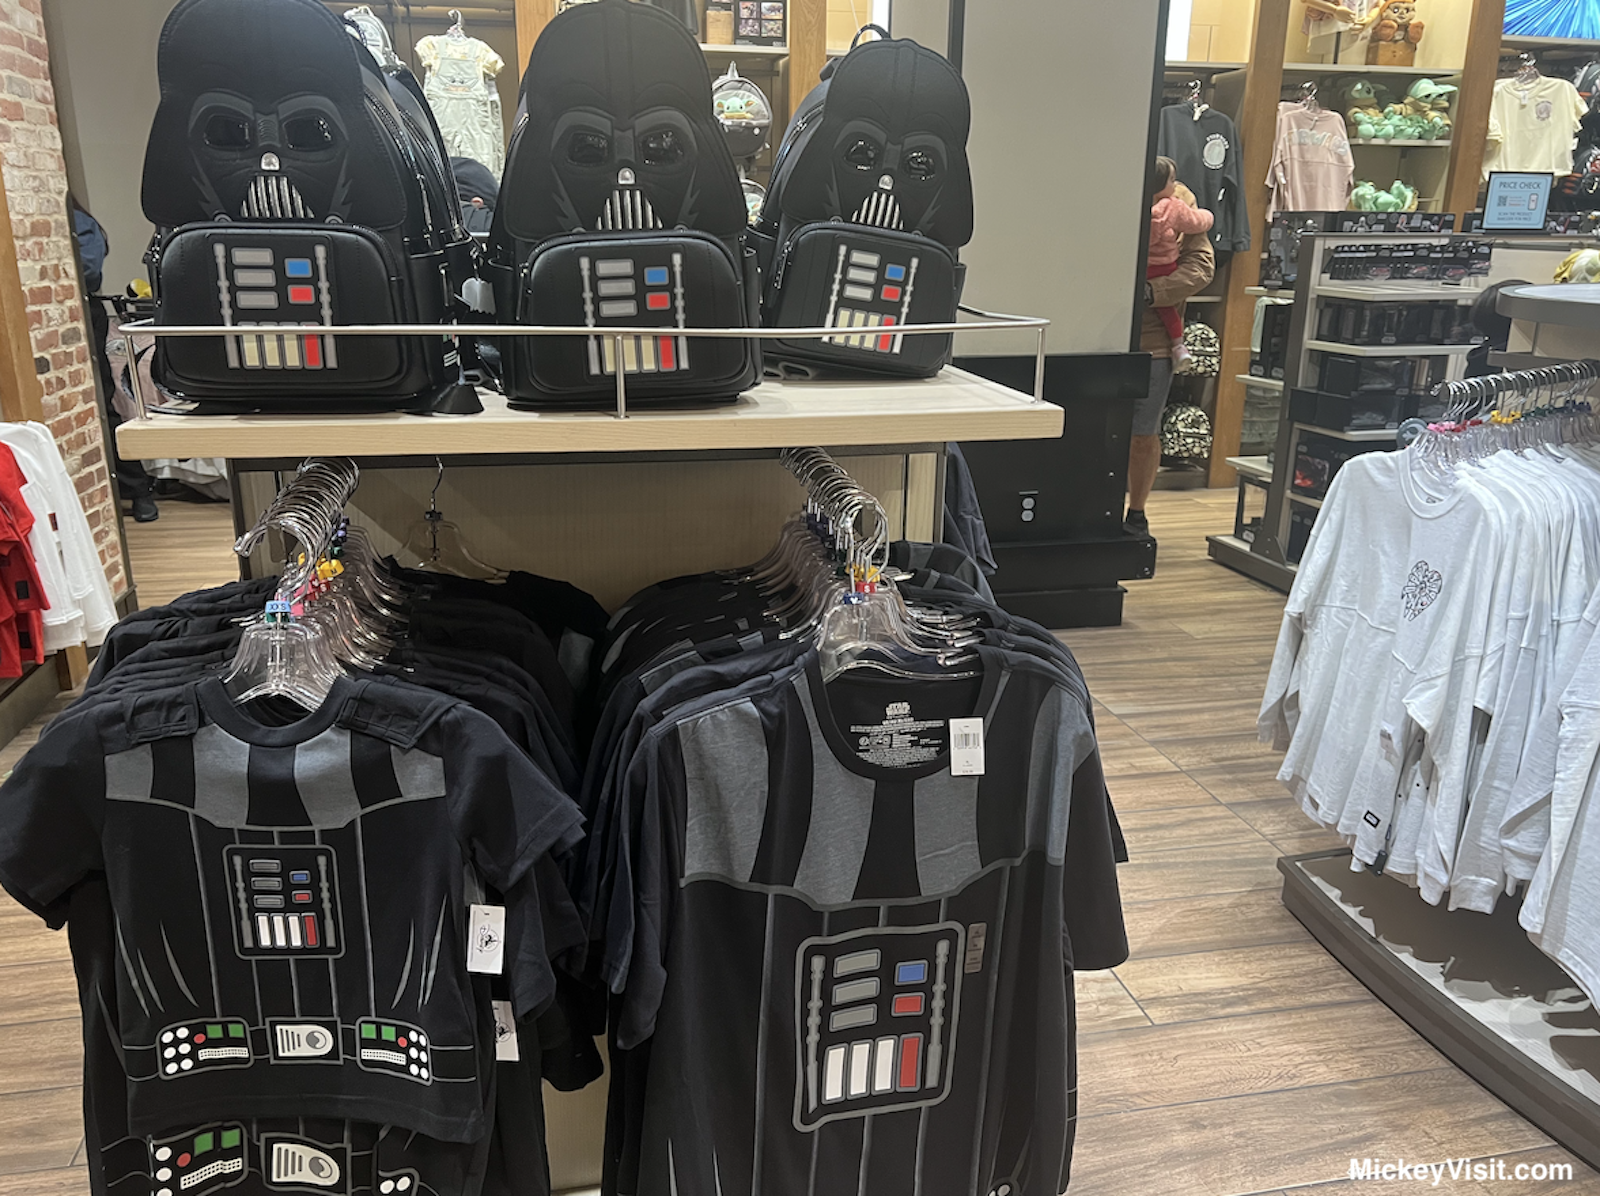 Darth Vader shirt and backpack